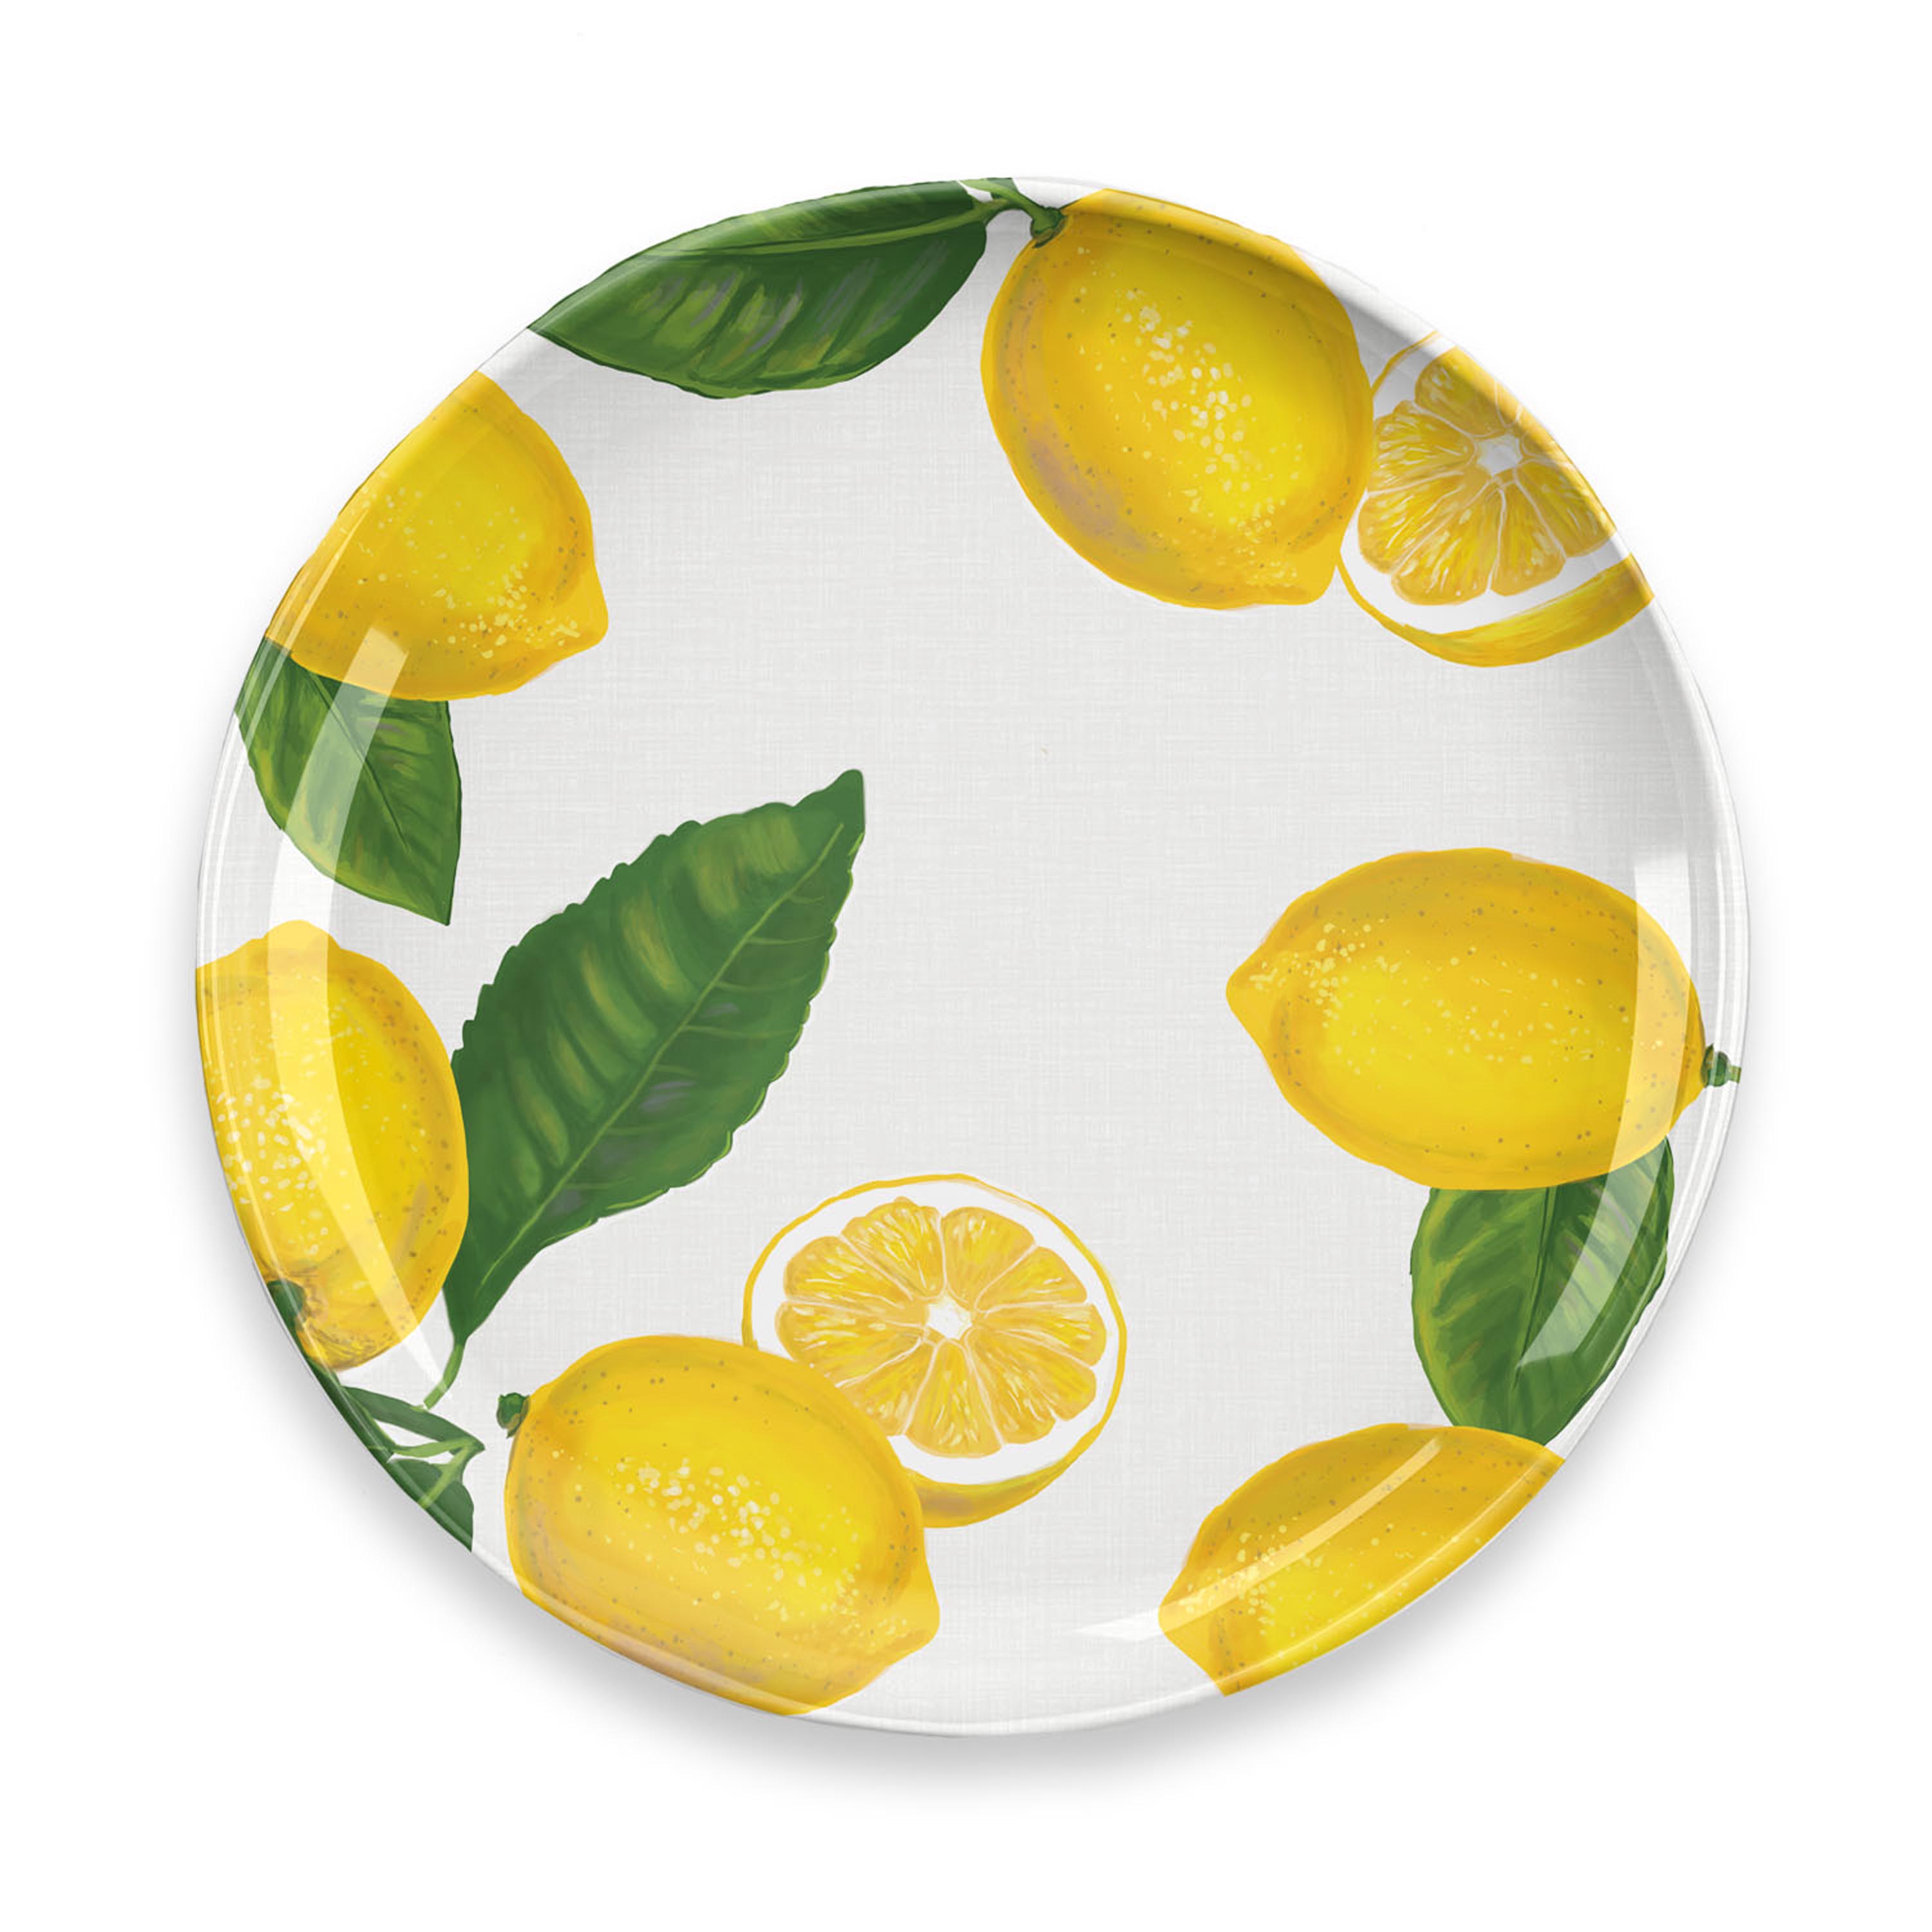 Тарелки с лимонами. Лимон на тарелке. Lemon тарелка. Лимон на блюдце. Тарелка под лимон.